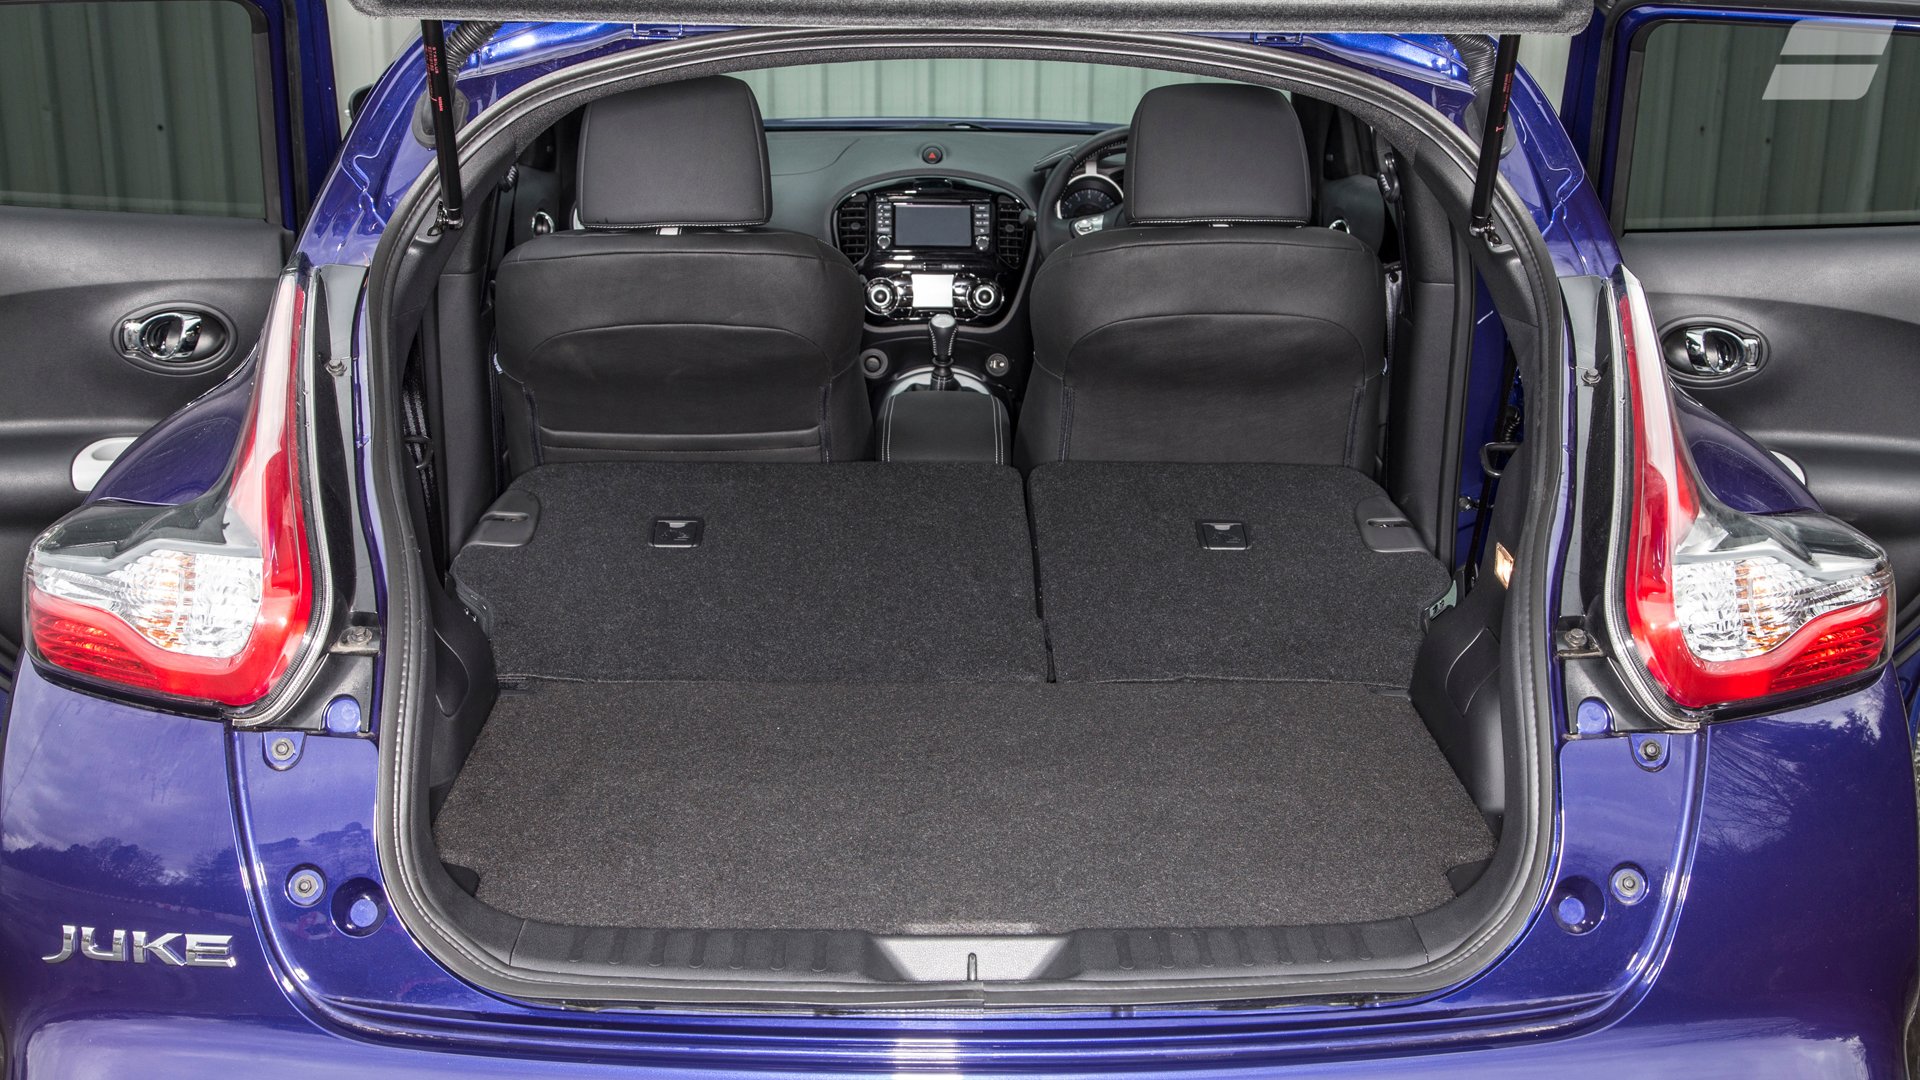 Nissan Juke Hatchback (2014 - ) review | AutoTrader